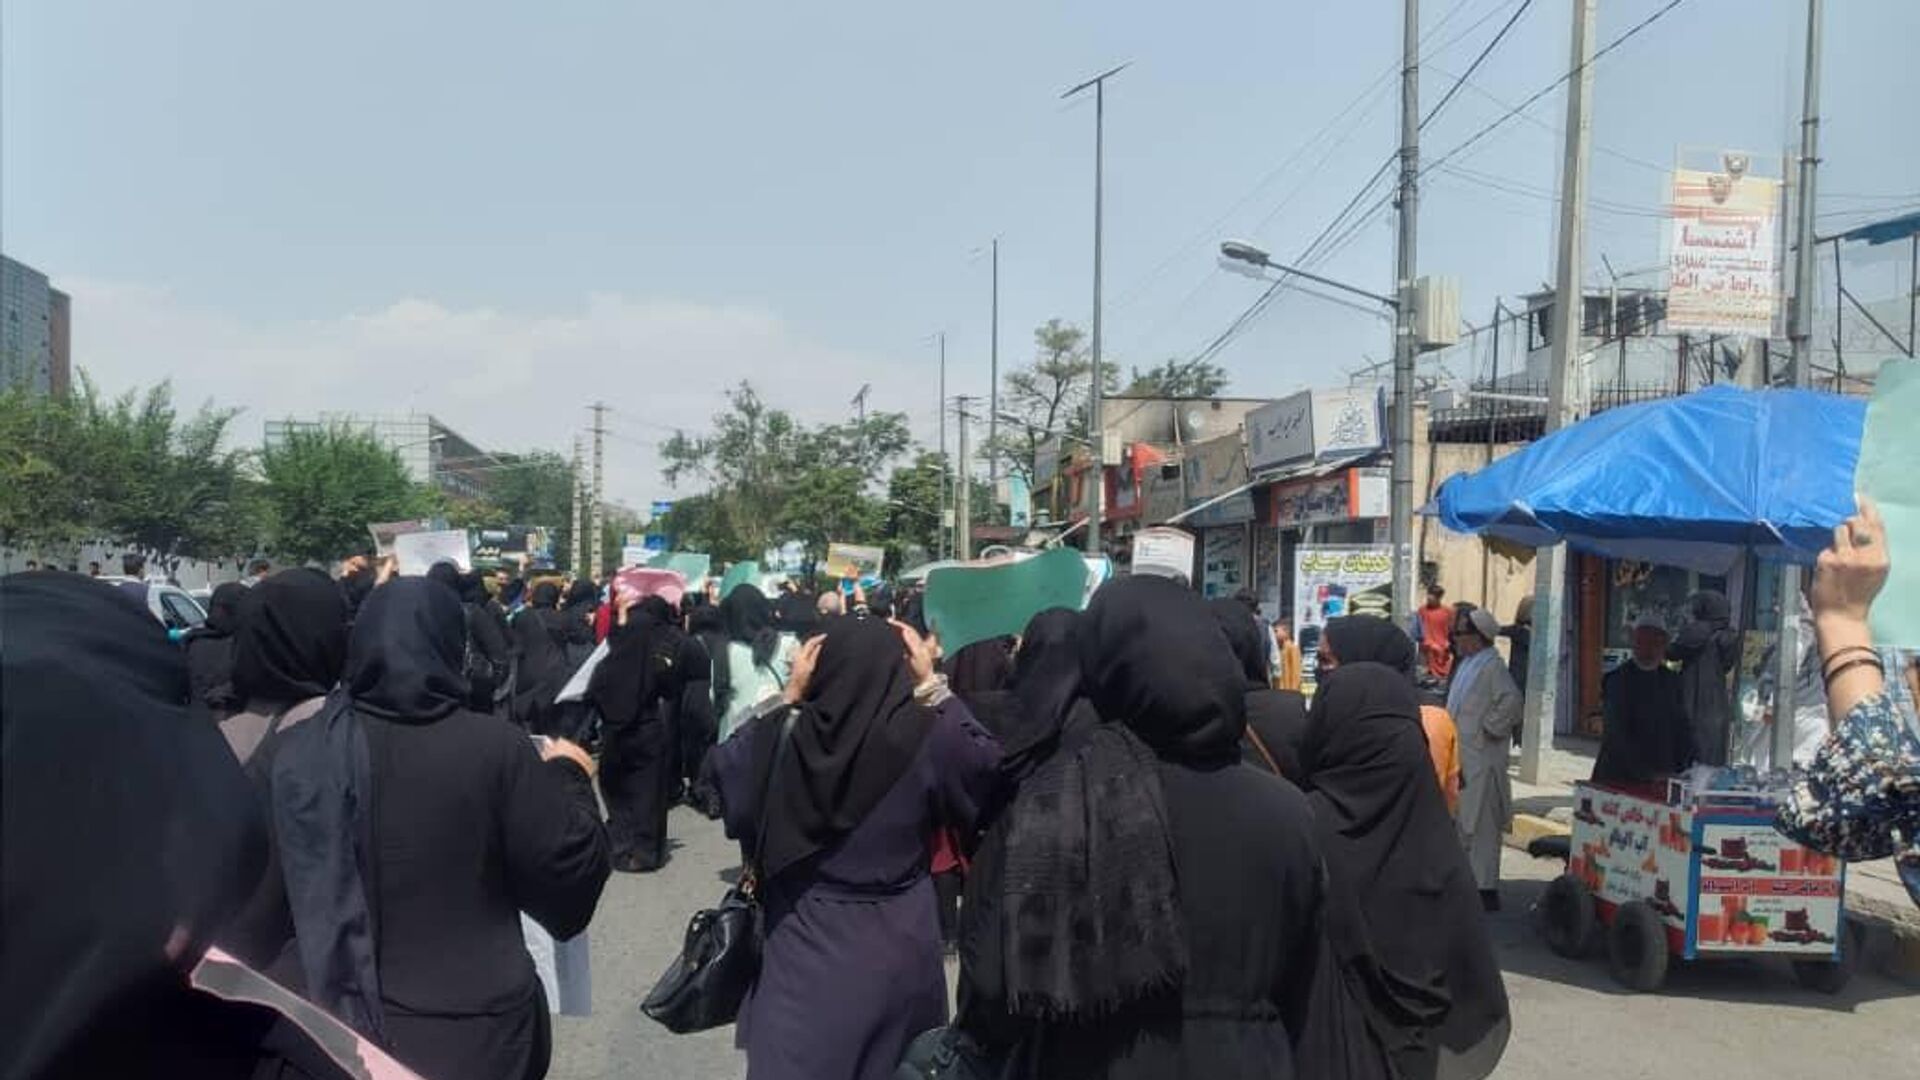   اعتراض زنان در کابل با گلوله طالبان پاسخ داده شد   - اسپوتنیک افغانستان  , 1920, 12.04.2023